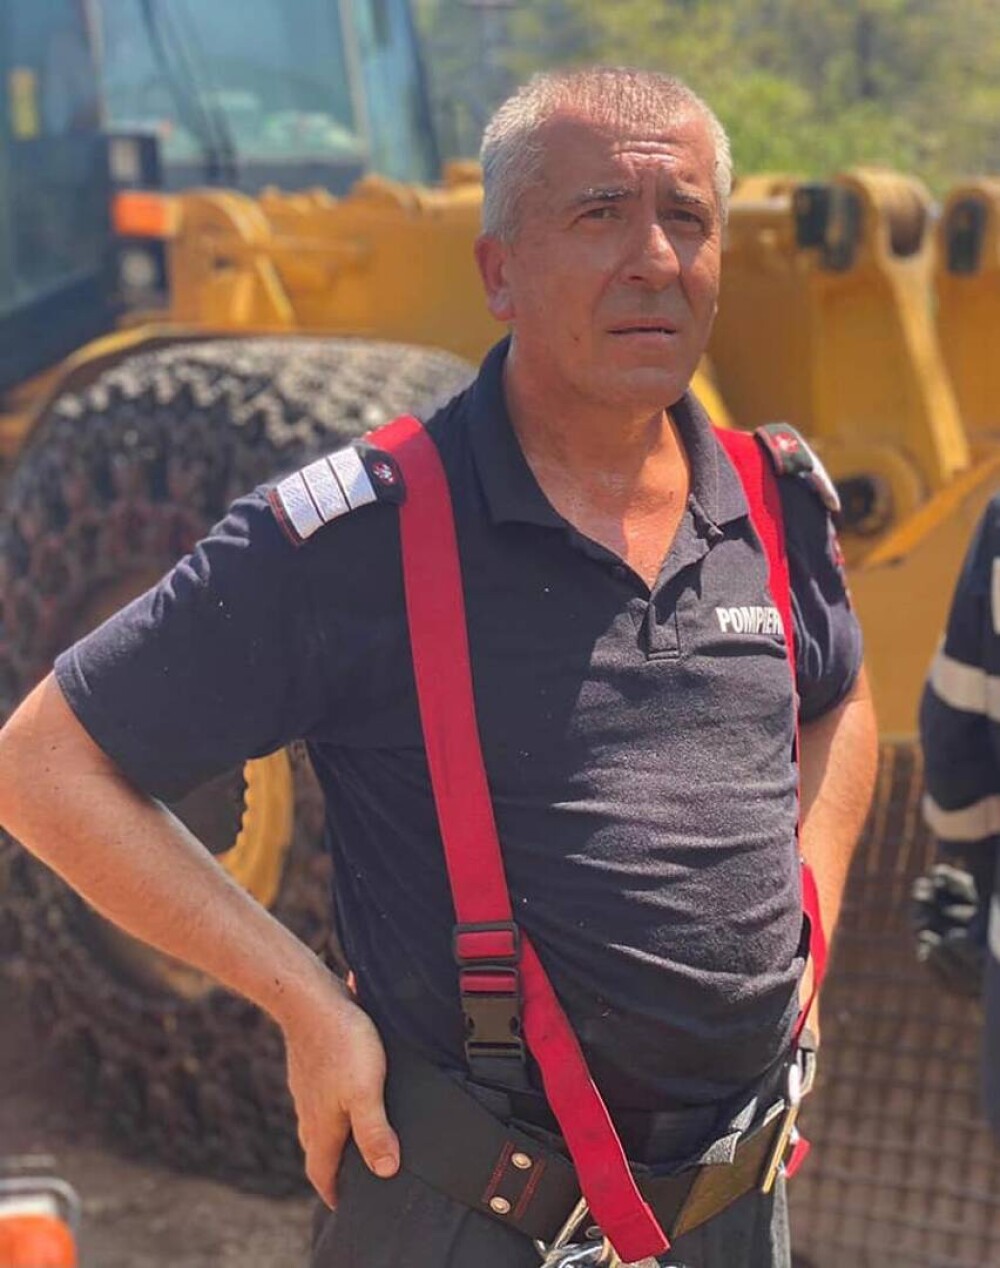 Pompierii români din Grecia au plecat fără să stea pe gânduri: “Avem timp să mergem acasă să ne anunțăm familiile?”. FOTO - Imaginea 2